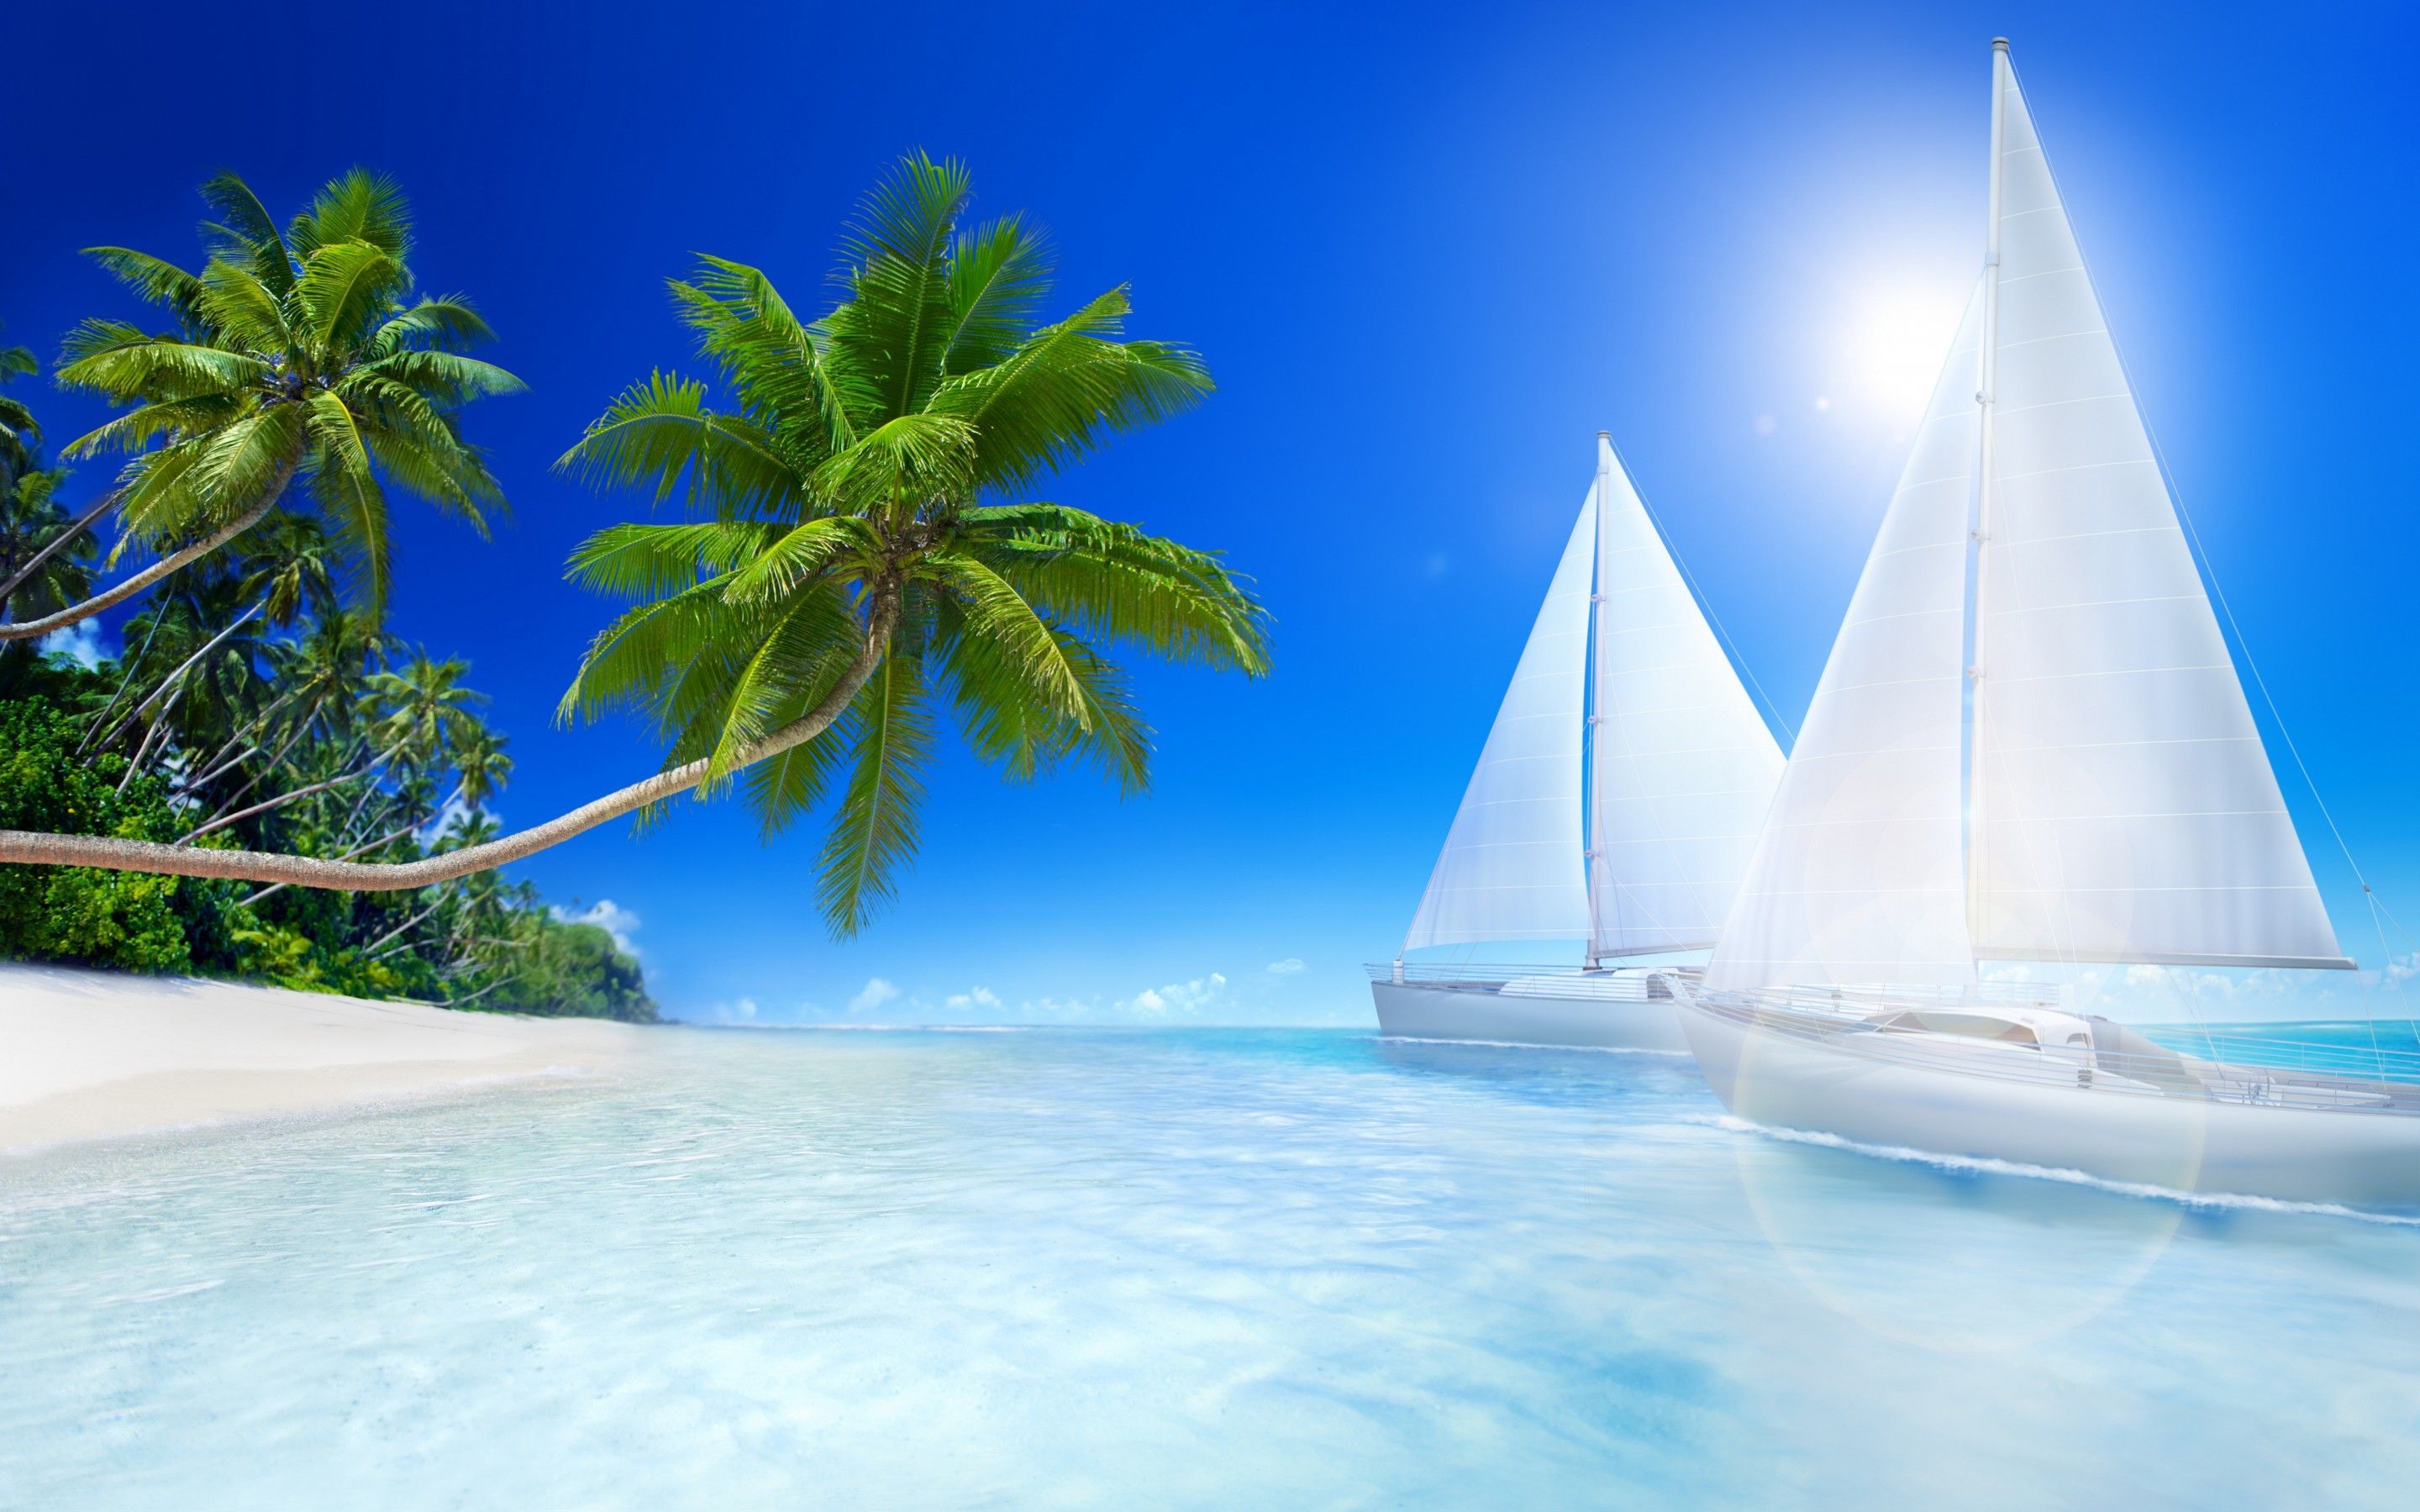 Beaches & Islands HD Wallpapers Beach Desktop Backgrounds,Stock